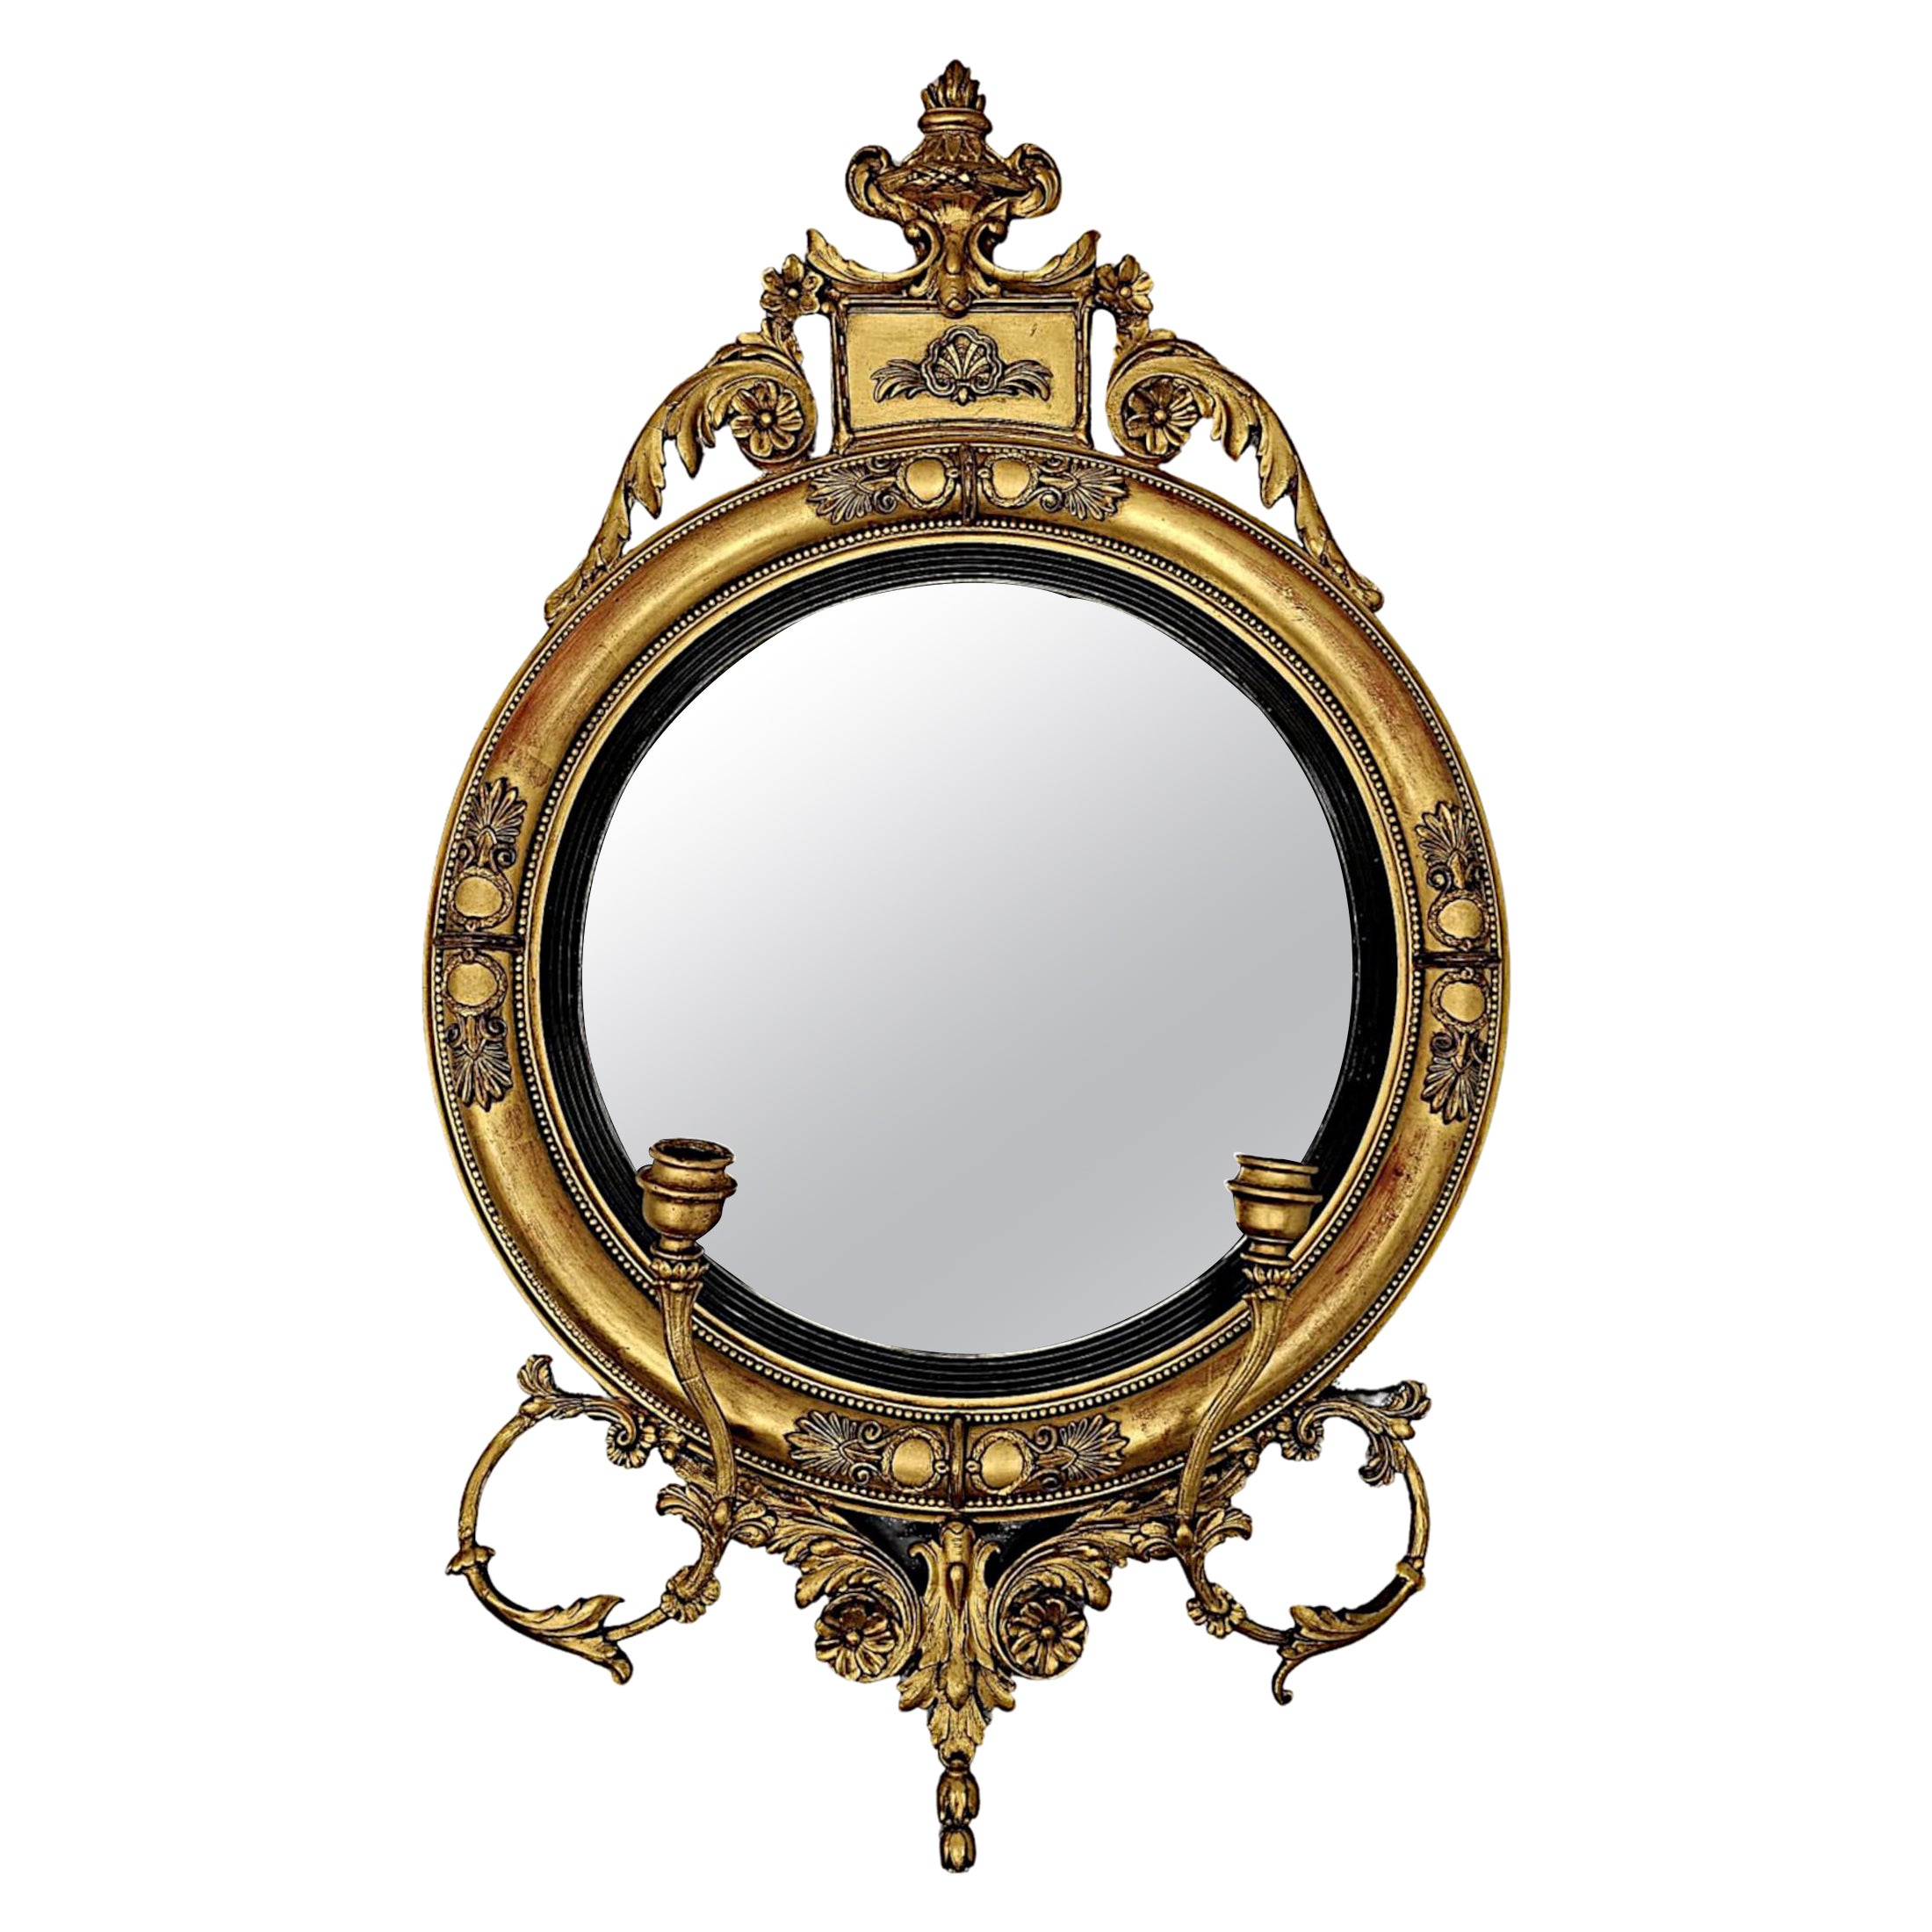  Ein sehr seltener und schöner Girandole-Spiegel aus Giltwood aus dem 19.